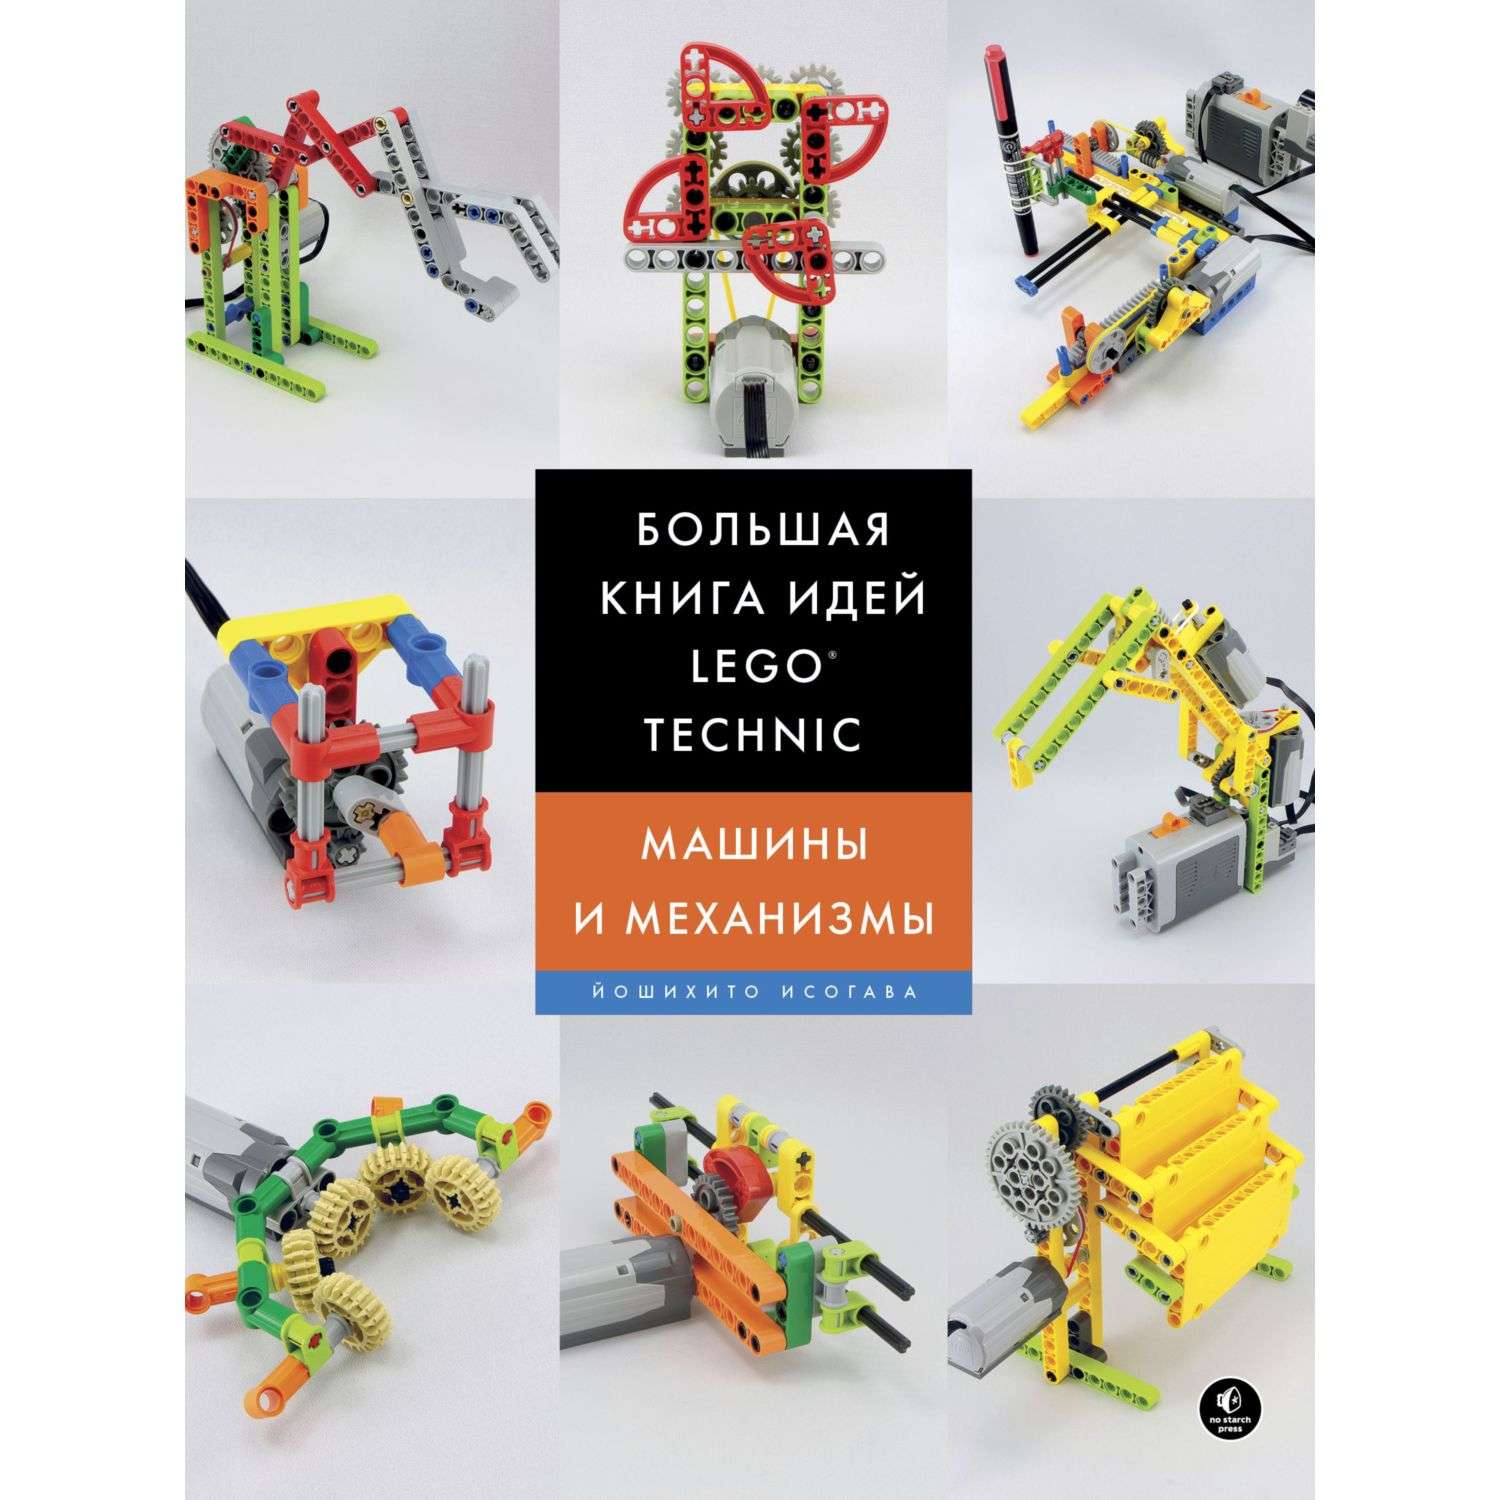 Книга Эксмо Большая книга идей LEGO Technic Машины и механизмы - фото 1